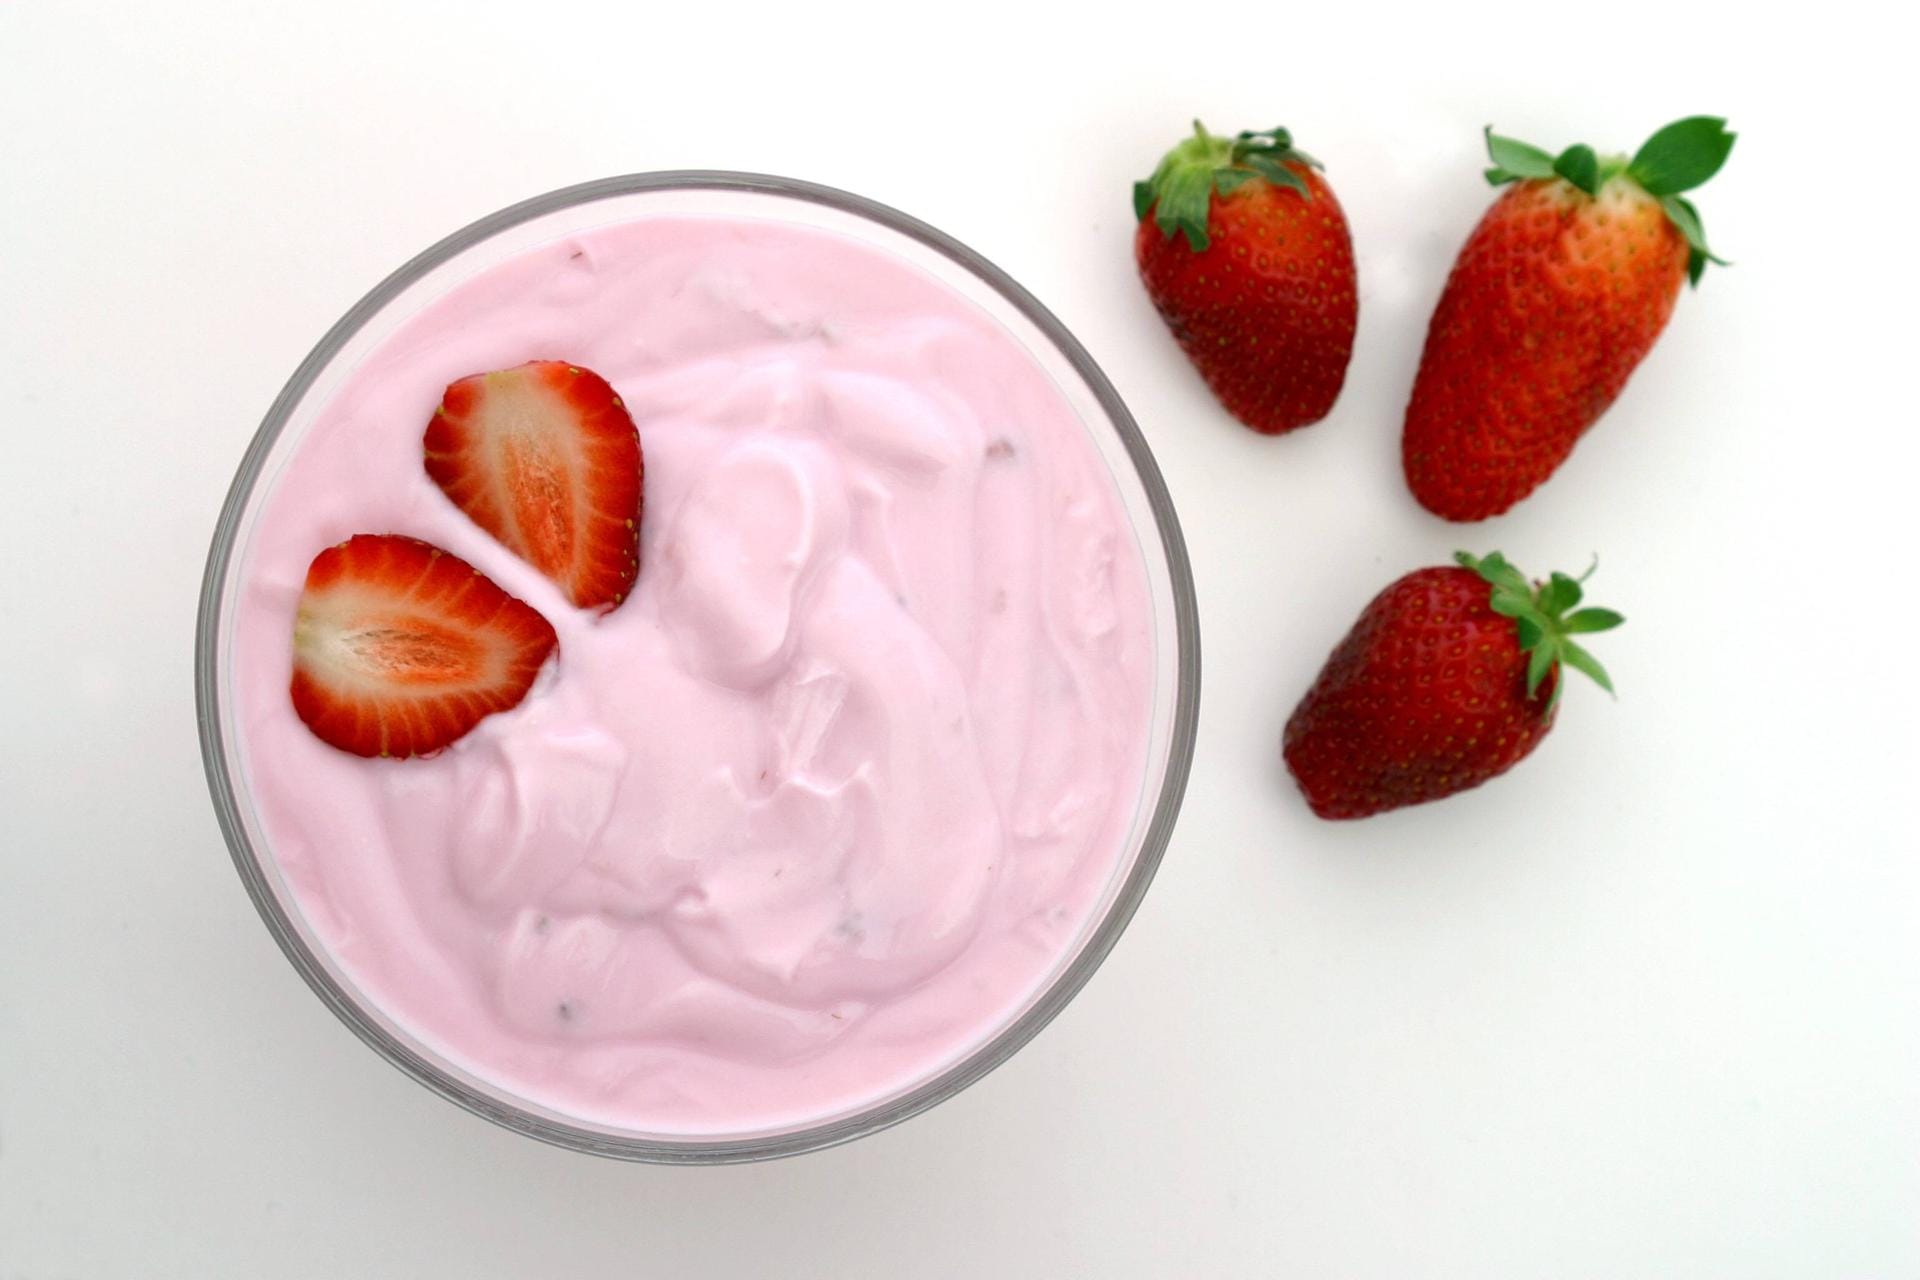 Ernährungs-Irrtum: Industrieller Erdbeerjoghurt wird aus Erdbeeren hergestellt